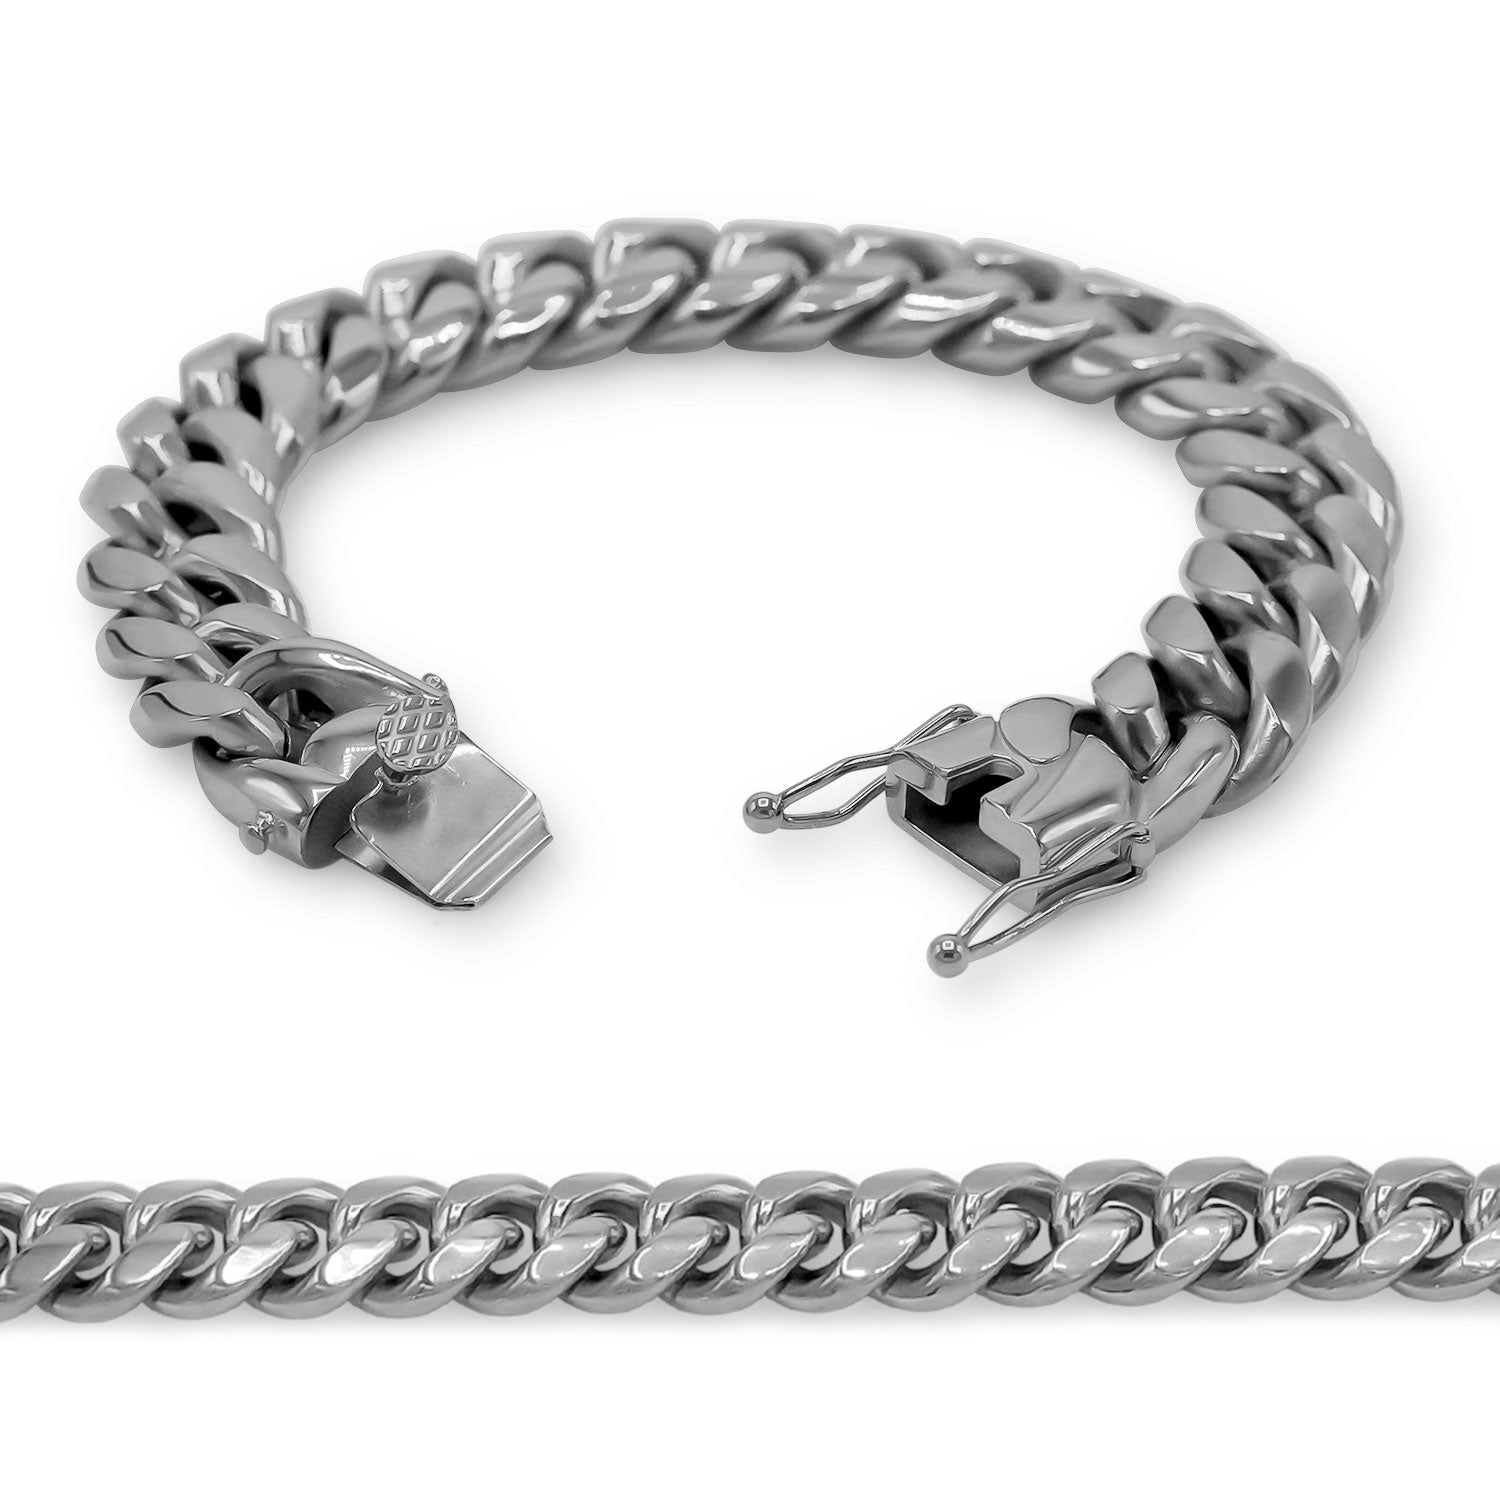 Buy Men's Silver Box Chain Bracelet Birthday Gift Gifts for Men Men's  Bracelet Gifts for Him Online in India - Etsy